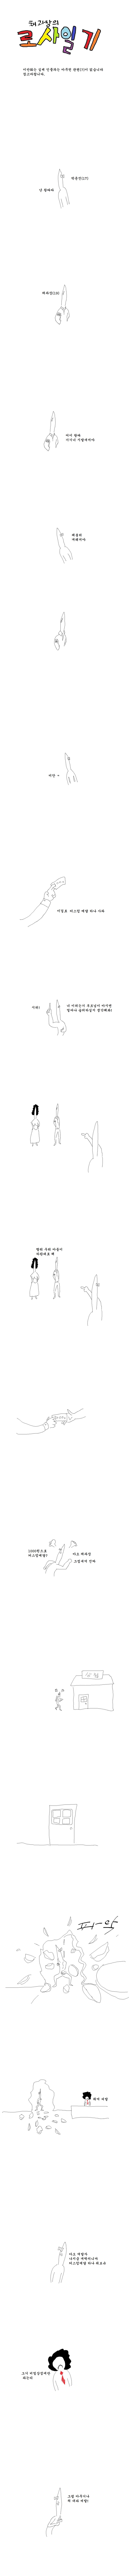 박윤진 쳐맞는 만화 2화